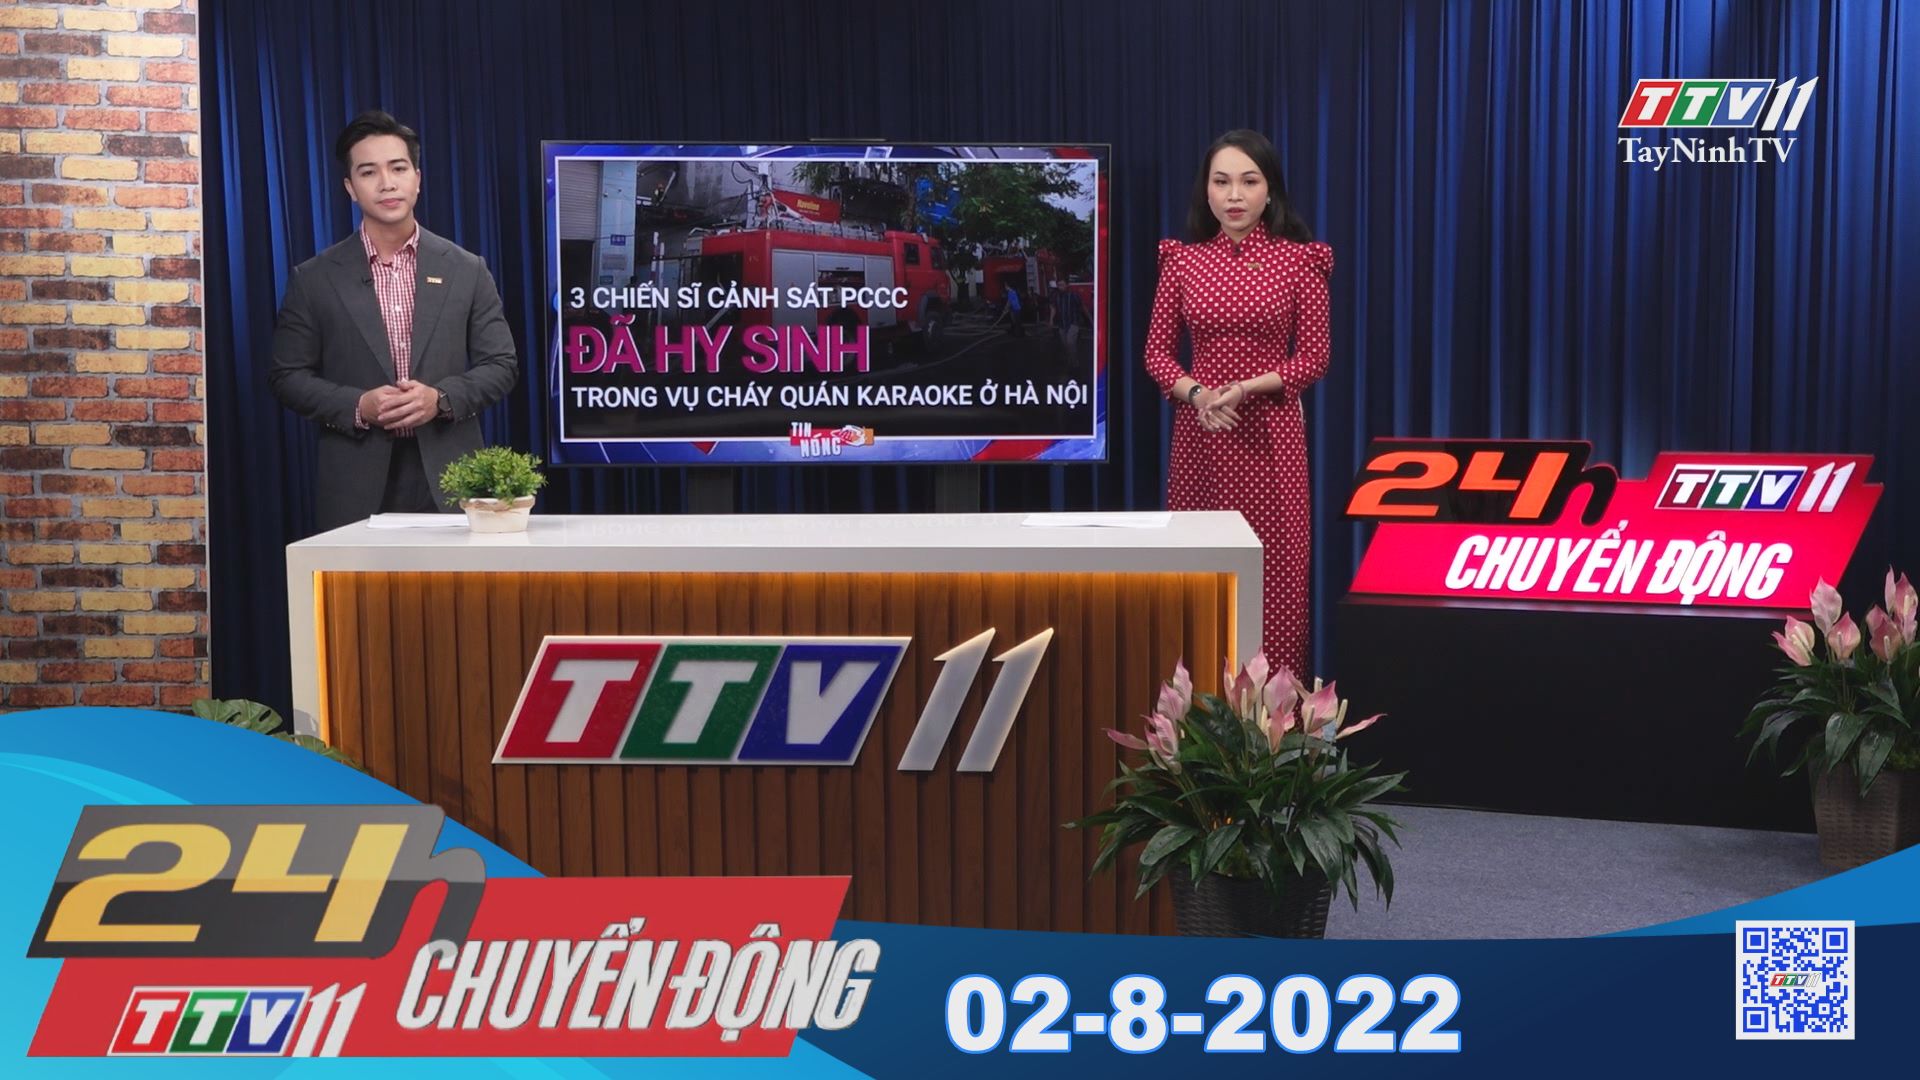 24h Chuyển động 02-8-2022 | Tin tức hôm nay | TayNinhTV